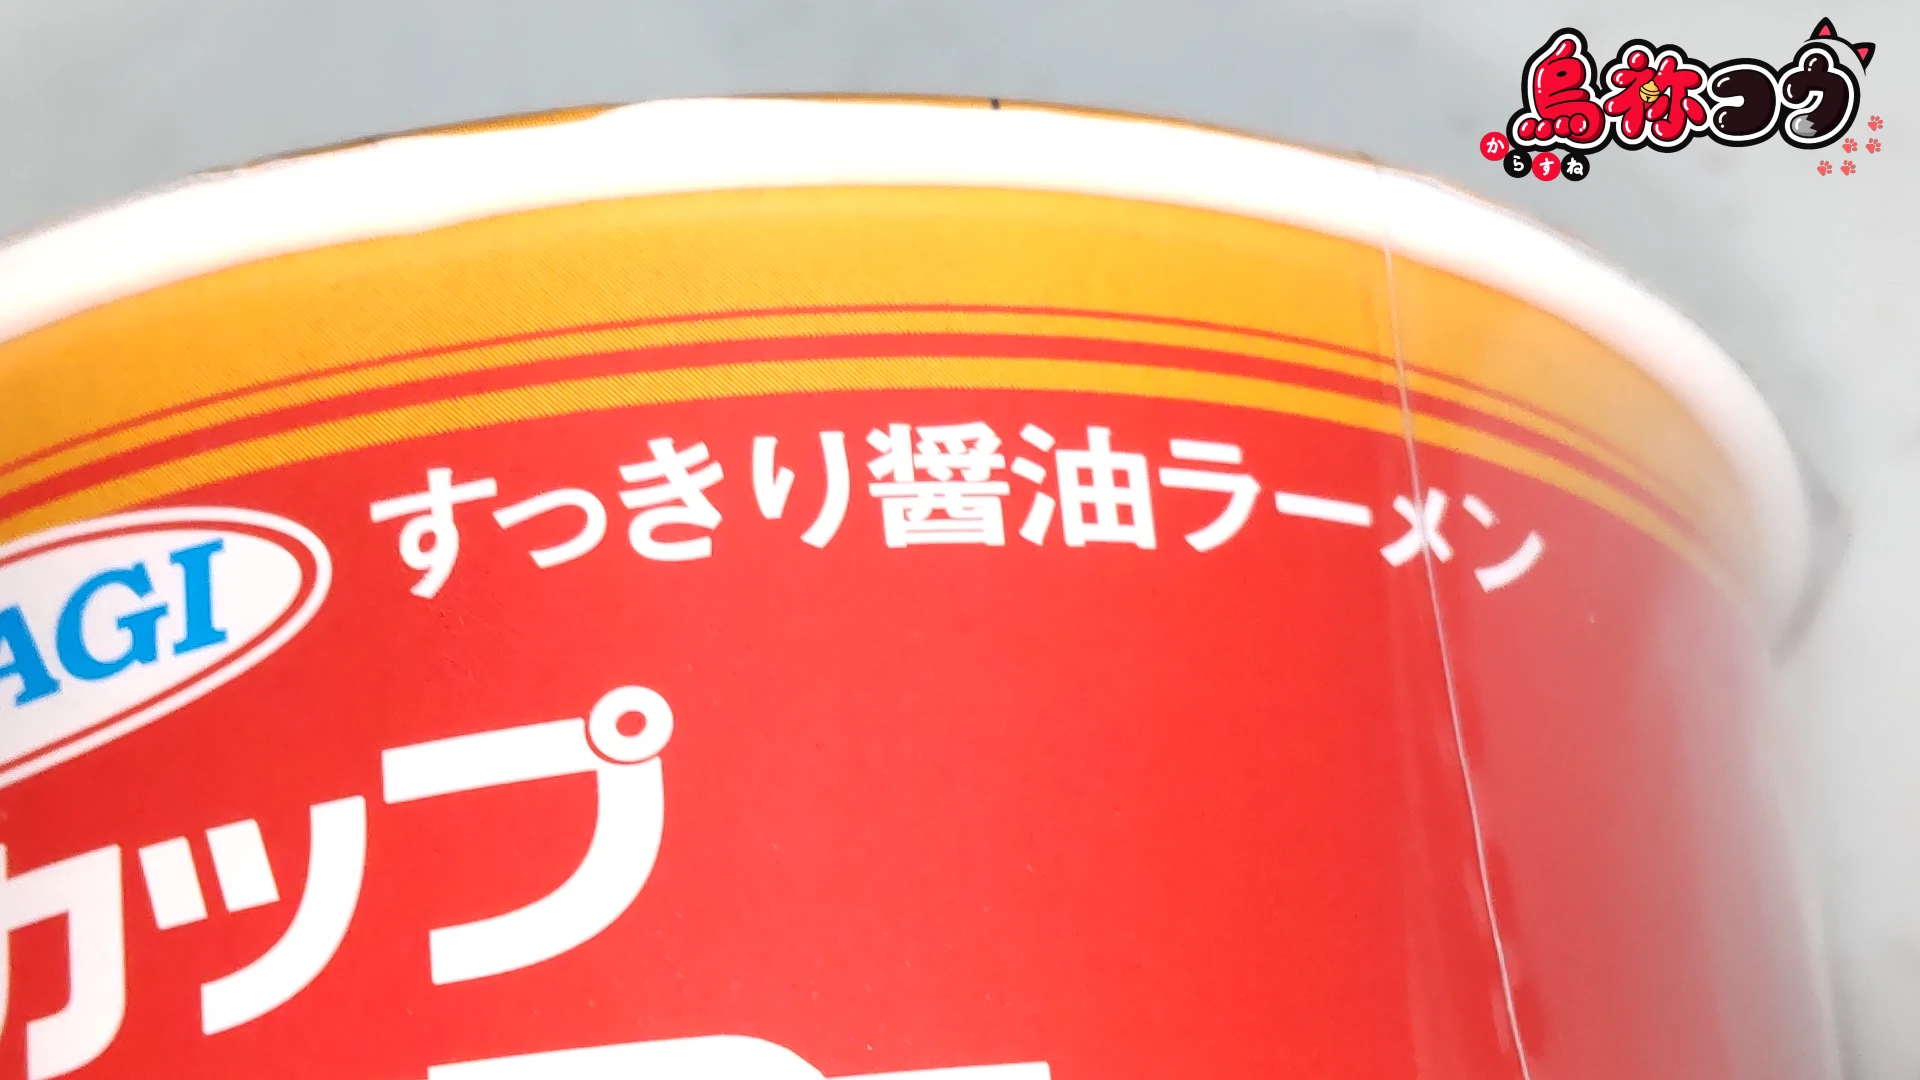 大黒食品の AKAGI 中華そば 縦型カップに書かれたすっきり醤油ラーメンの表記です